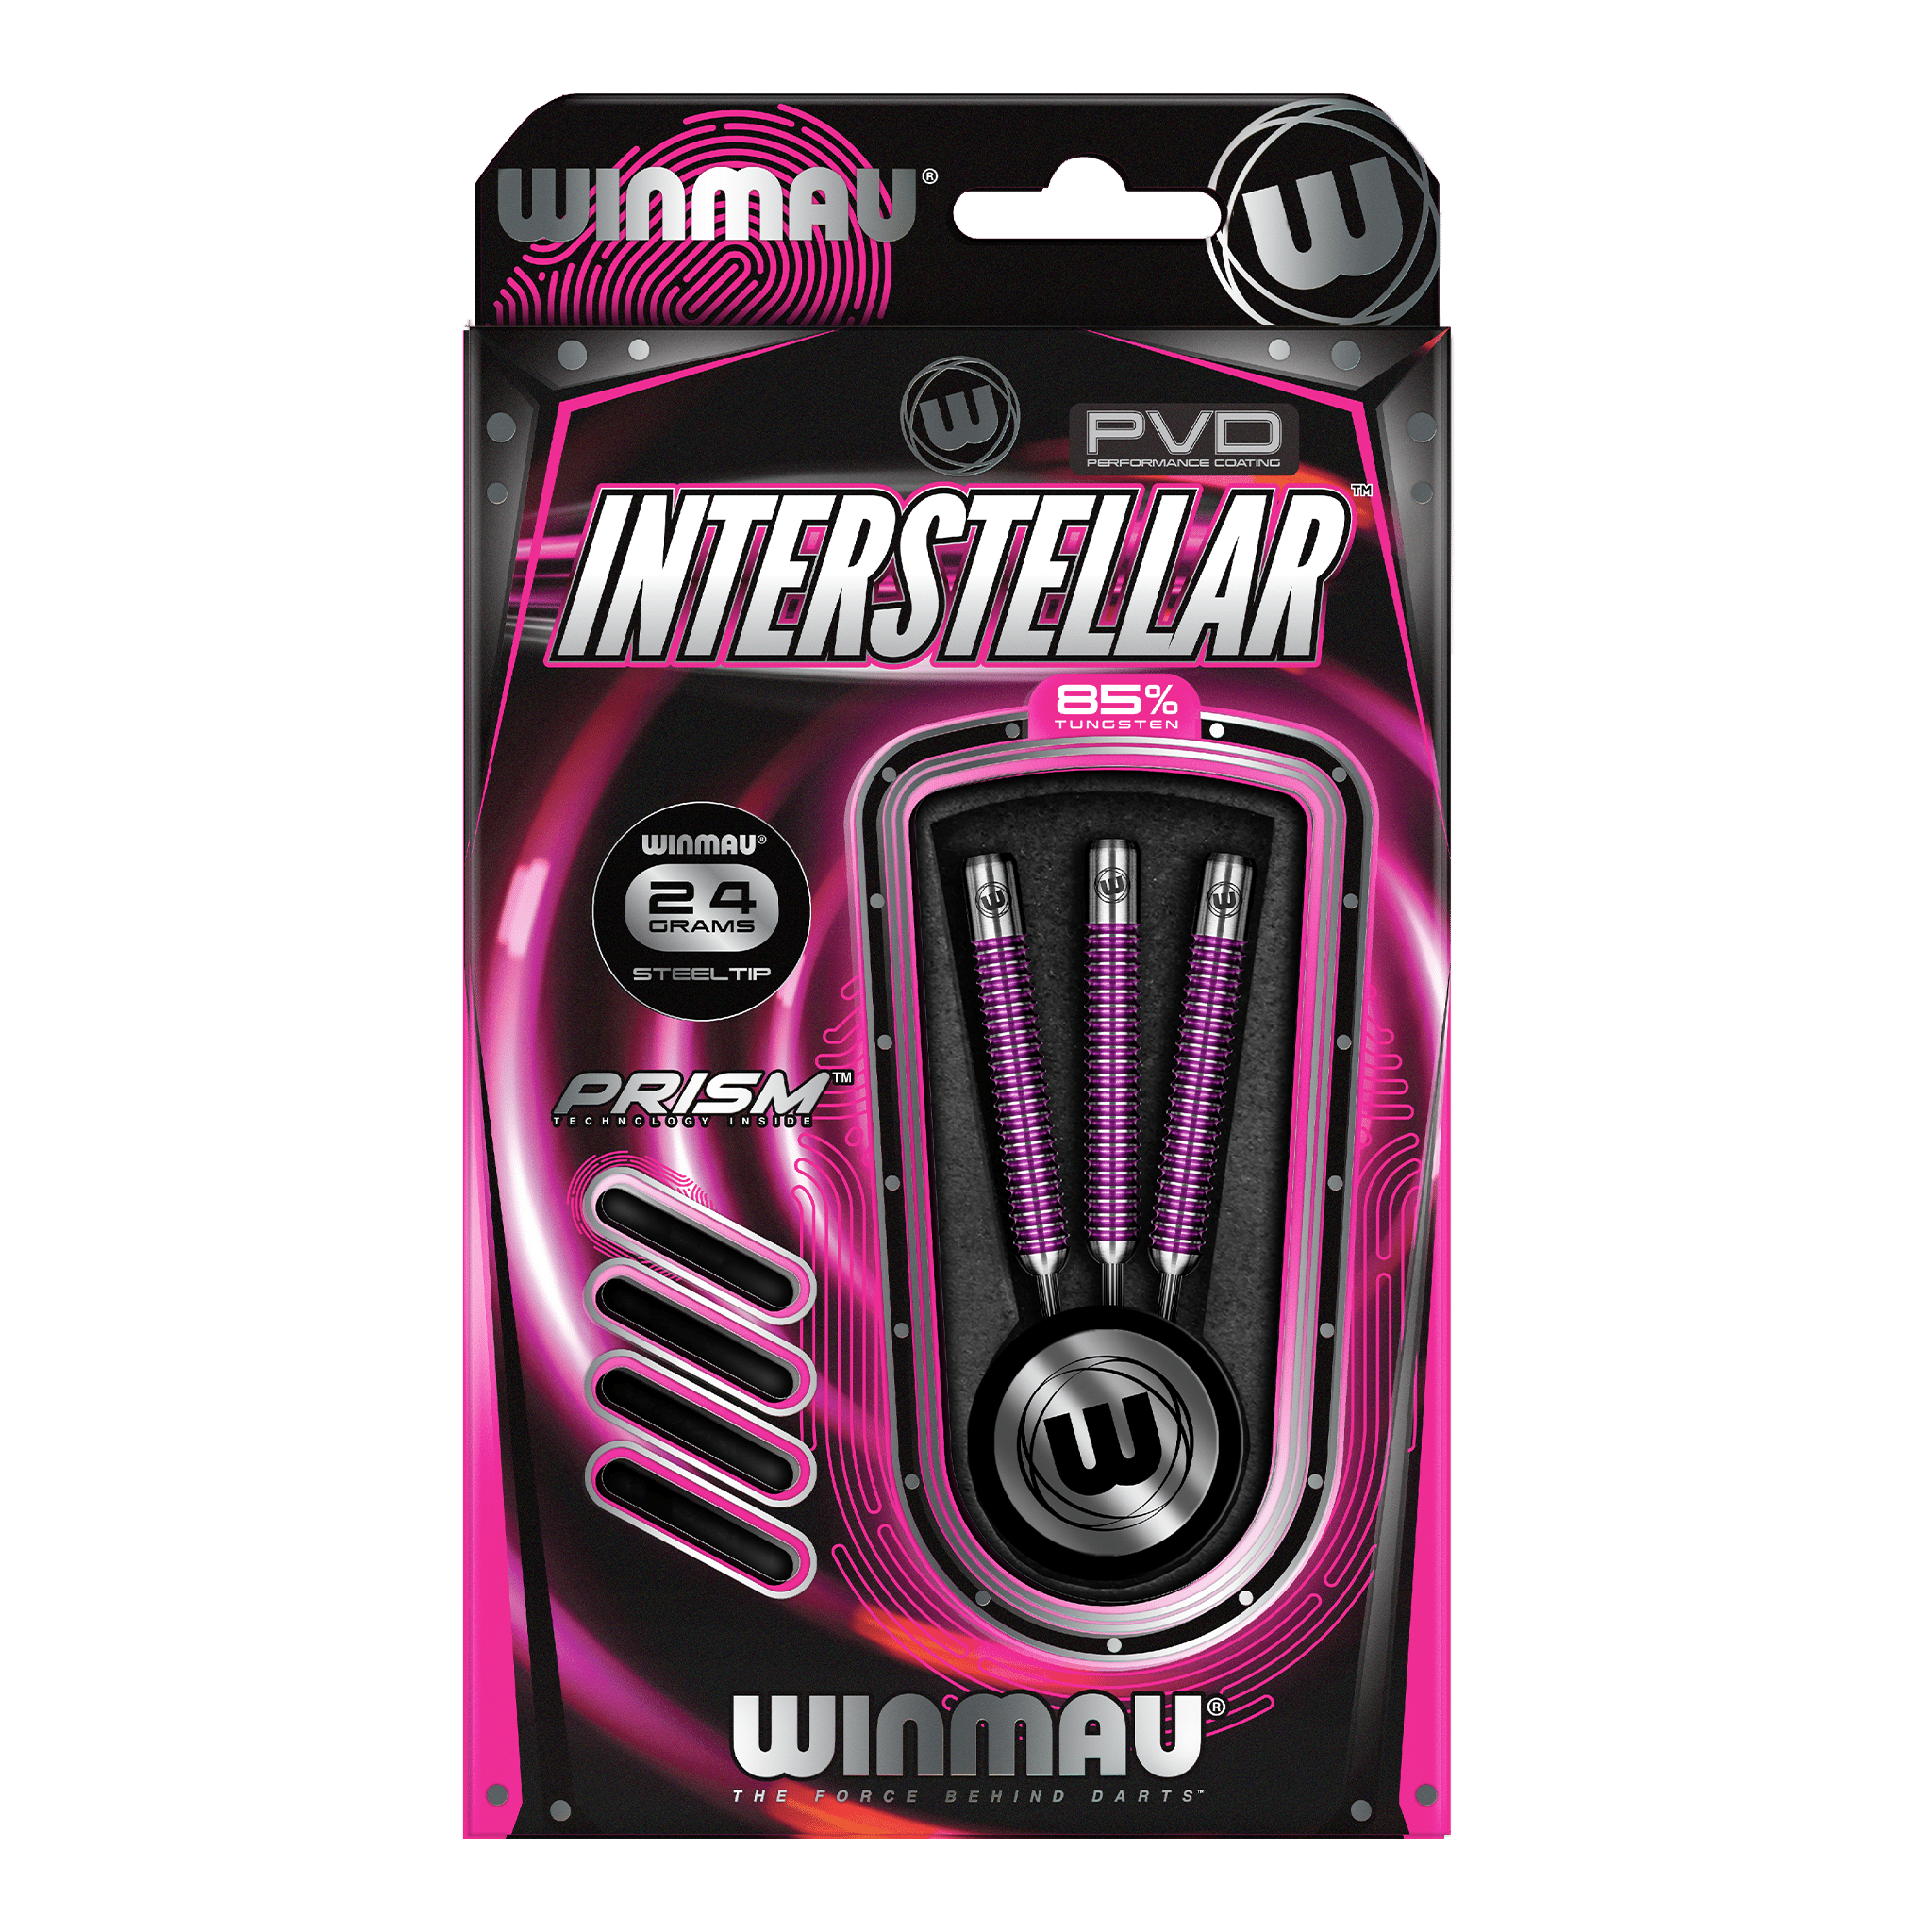 Winmau Interstellar Steel Tip Darts - 85% Tungsten - 24 Grams Darts